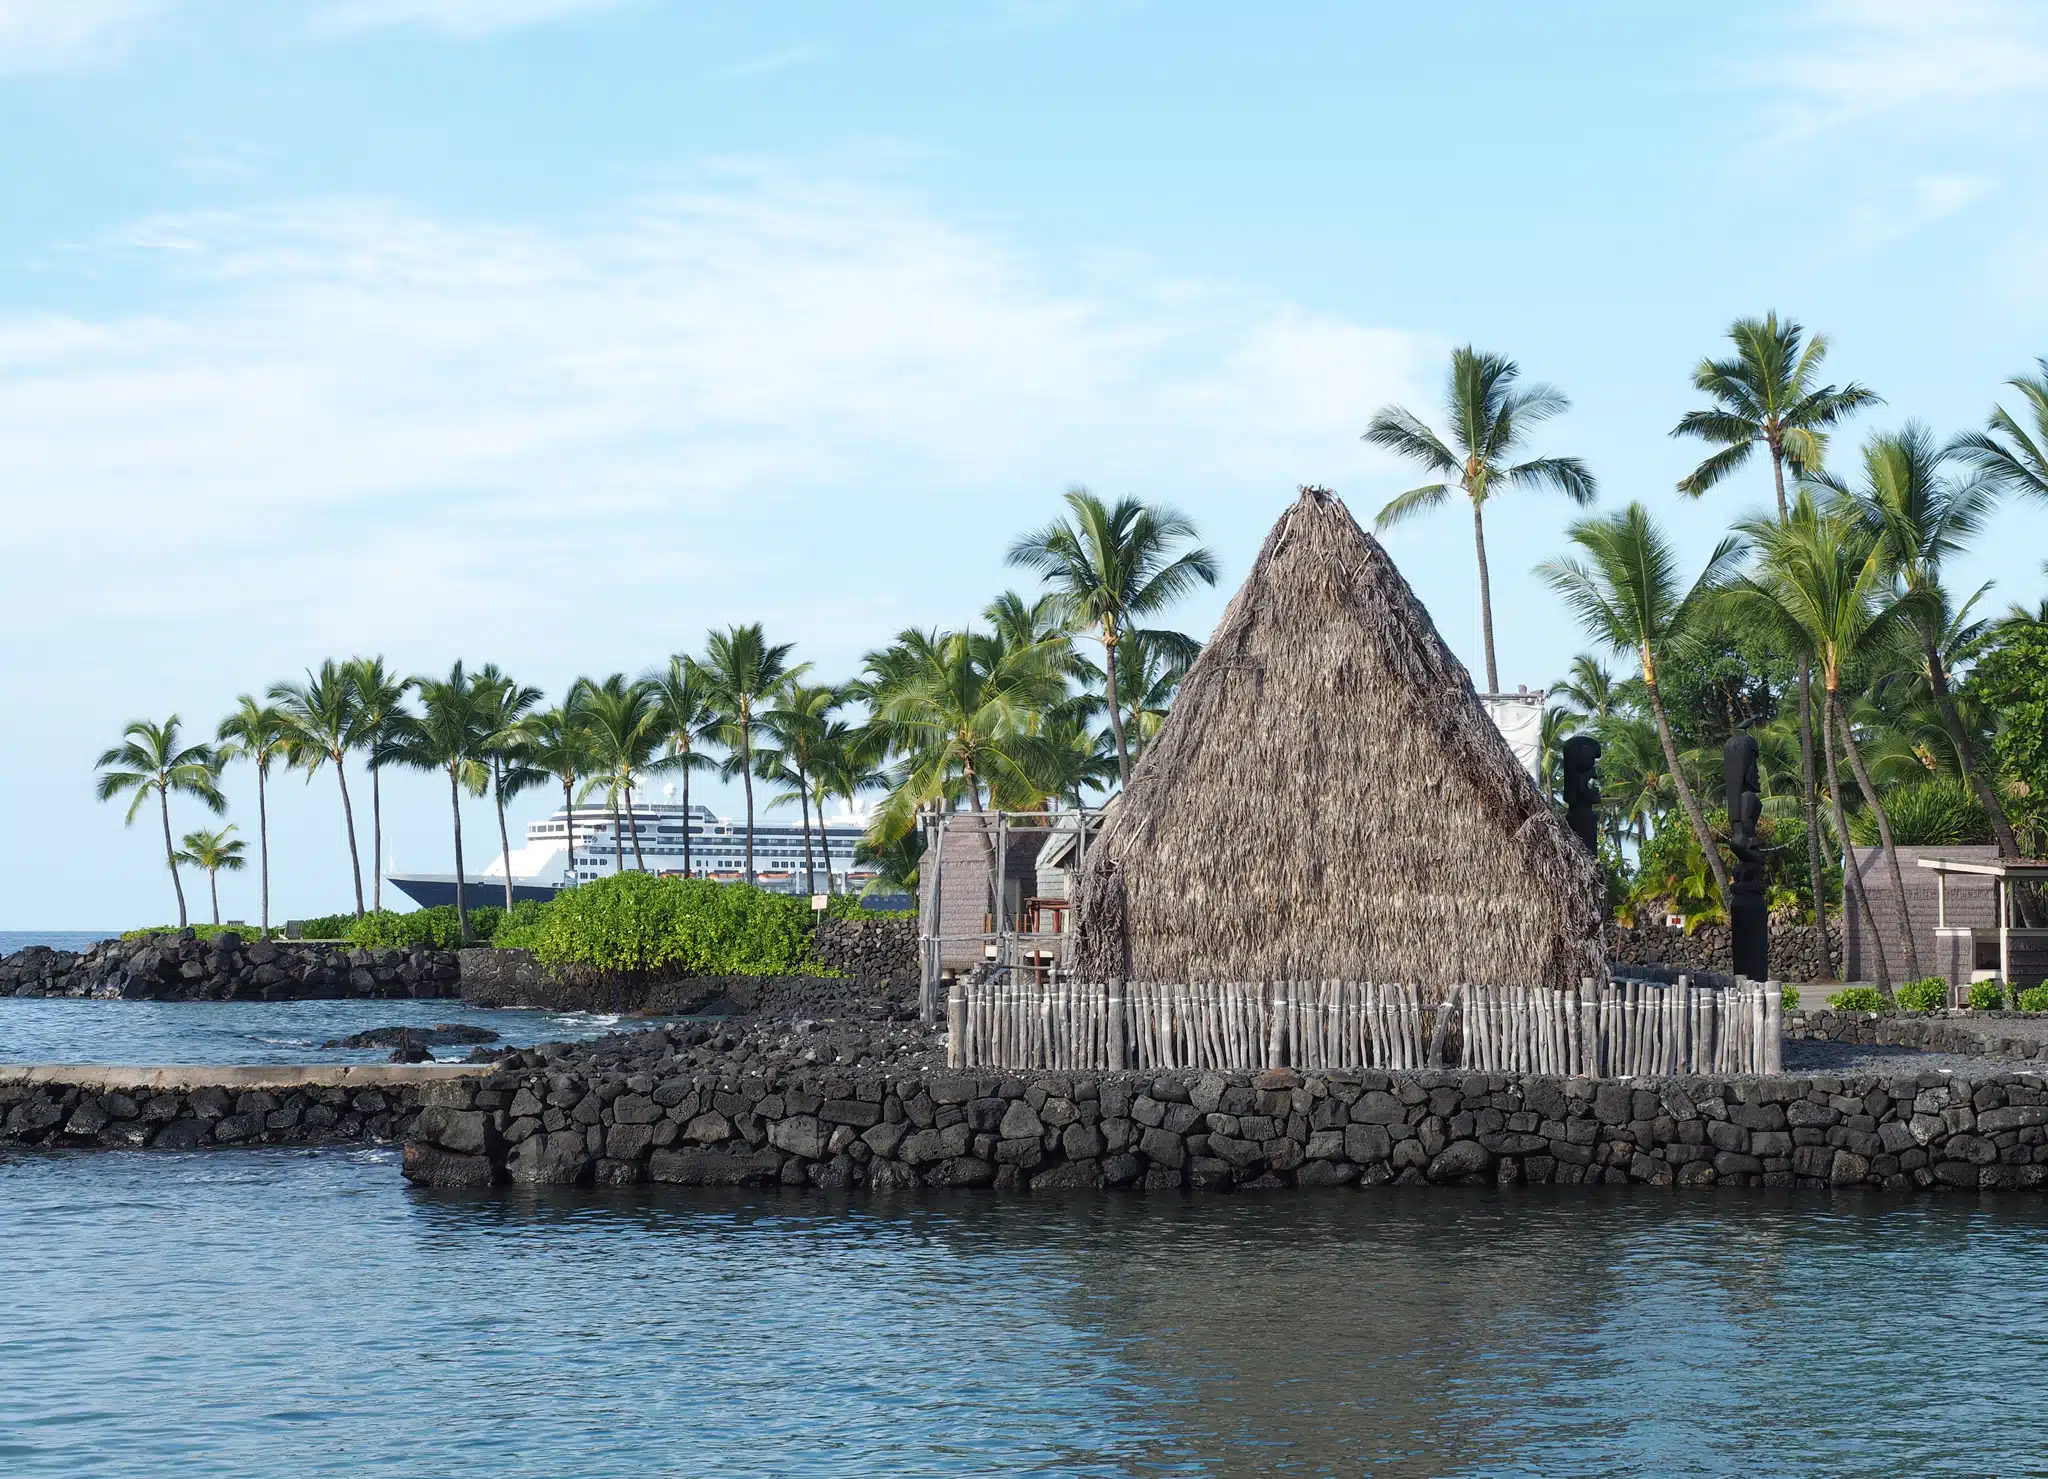 Ahu'ena Heiau is a Heritage Site located in the city of Kailua-Kona on Big Island, Hawaii